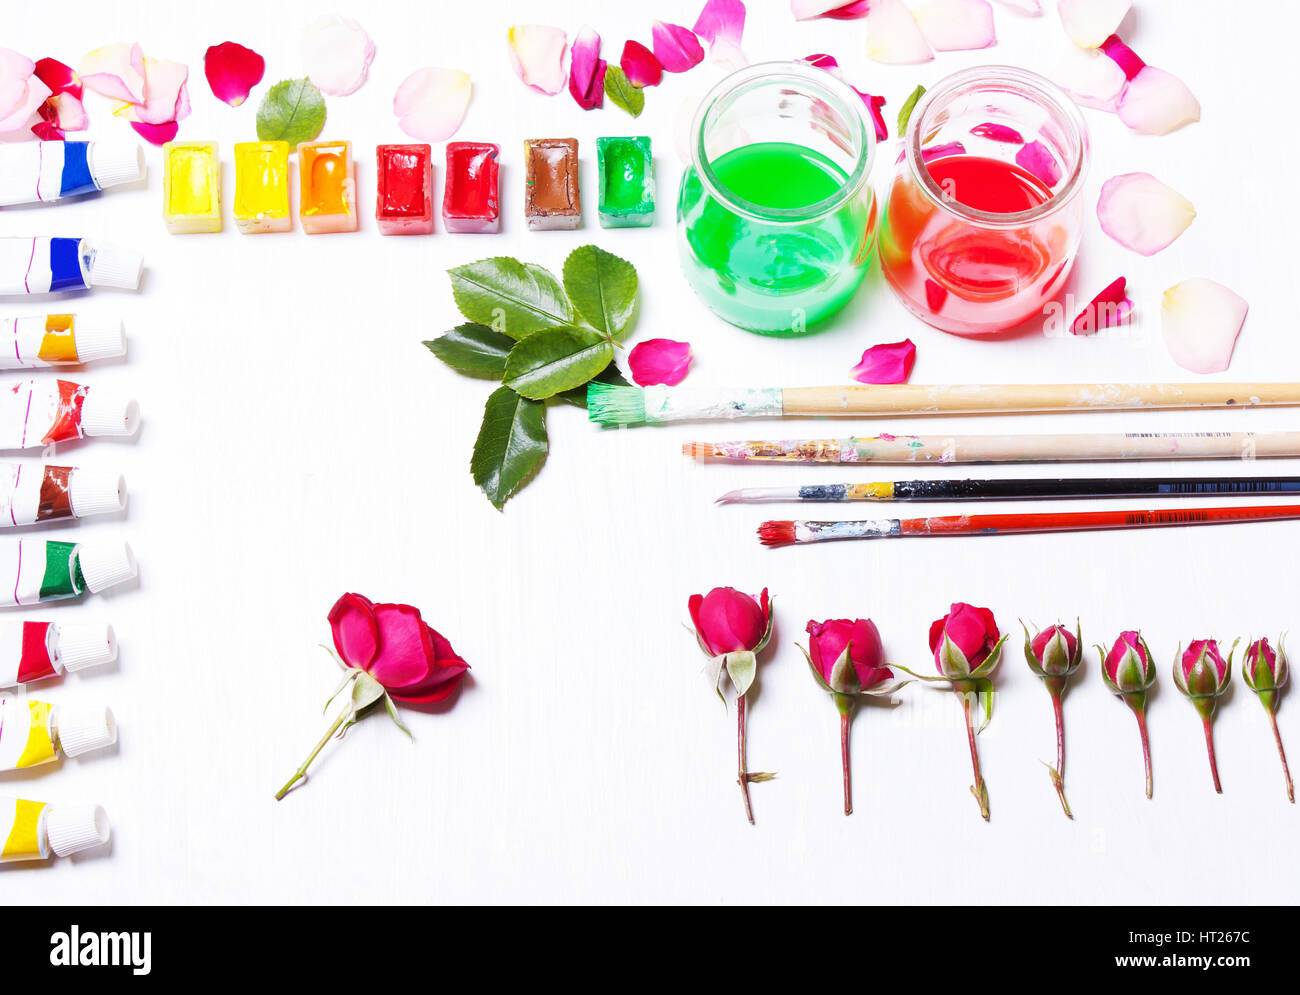 Artiste au travail, designer. Les peintures, pinceaux, fleurs et roses. Concept Art et d'inspiration. Haut de la vue, télévision Banque D'Images